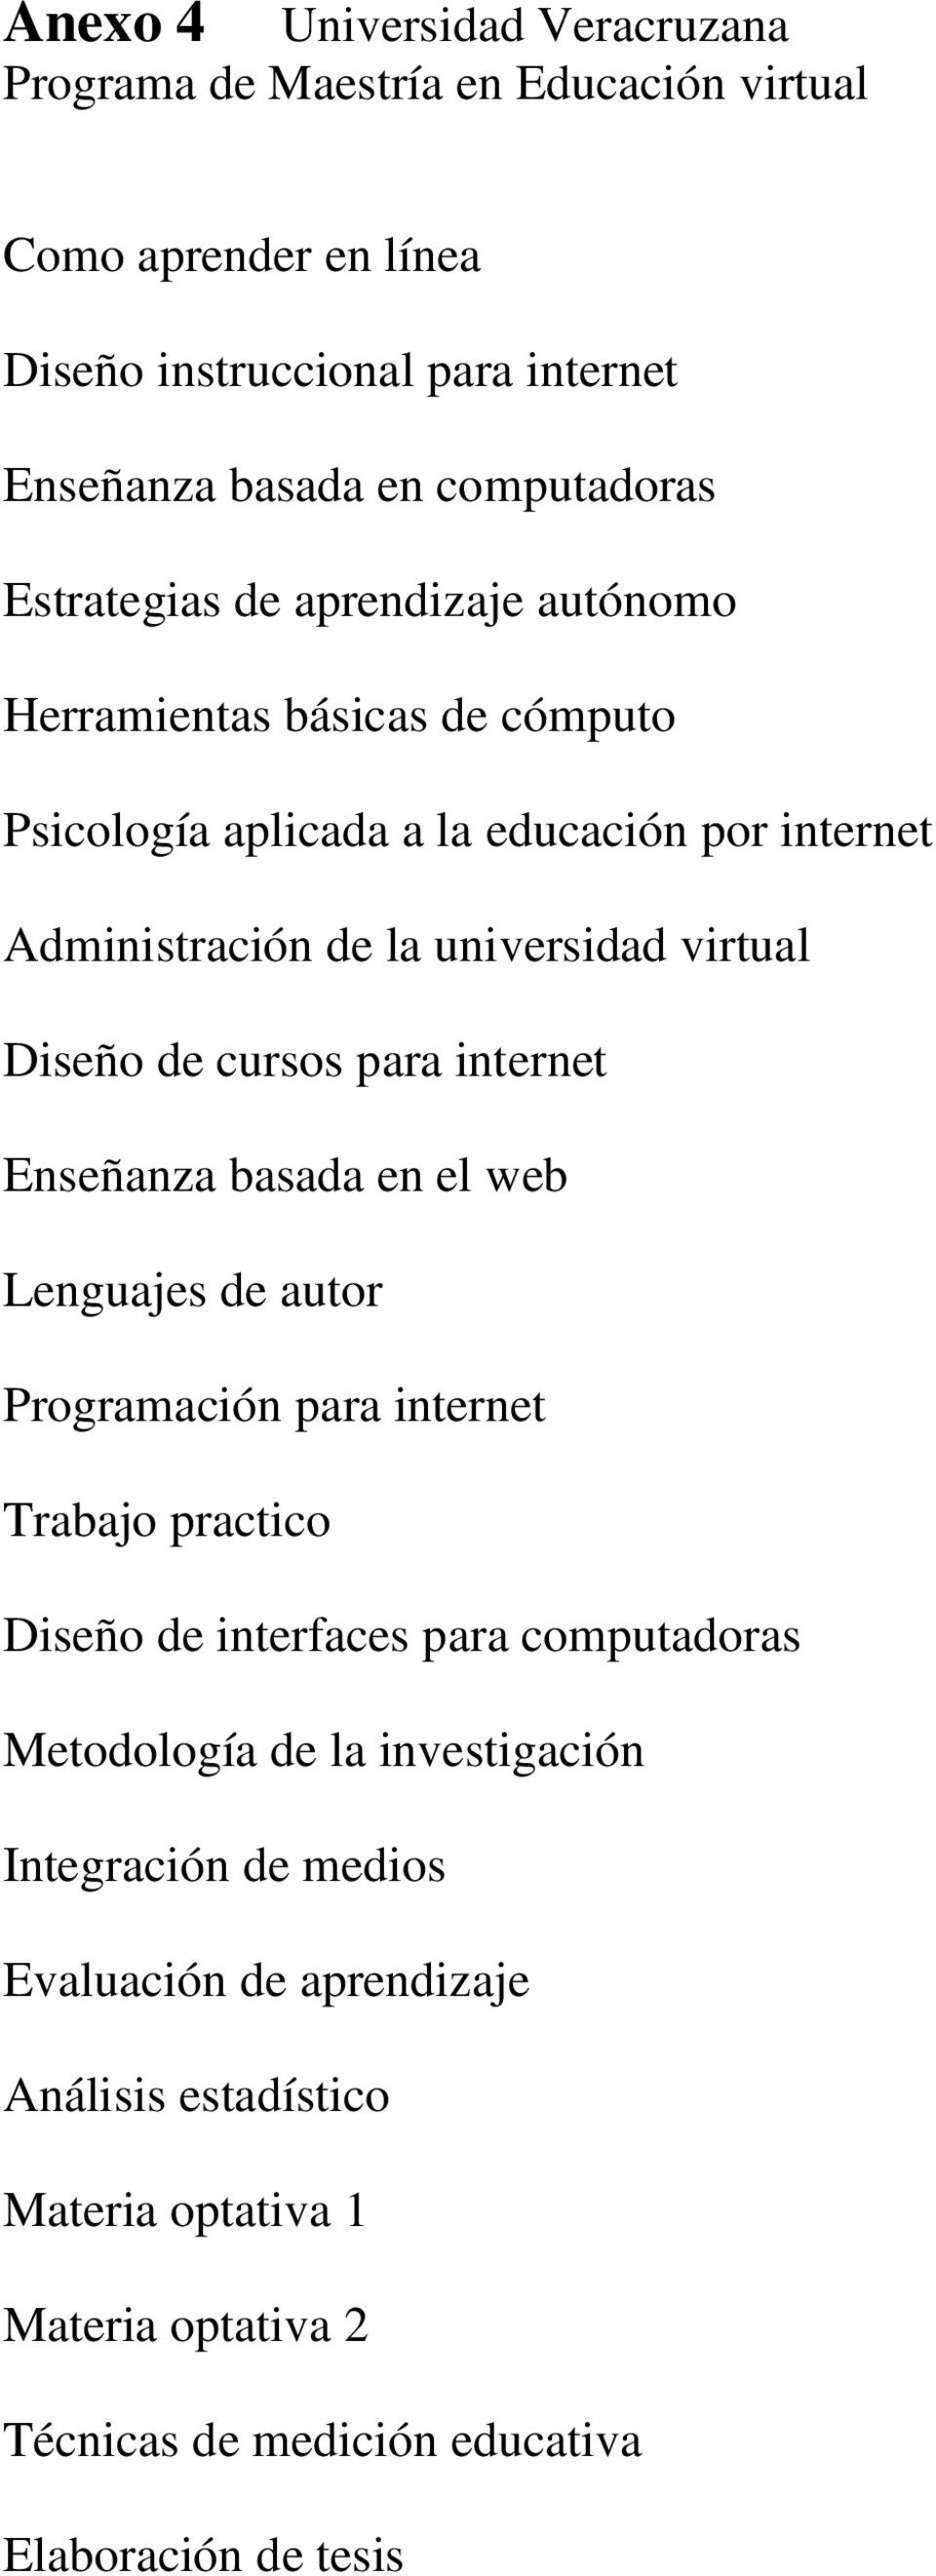 cursos para internet Enseñanza basada en el web Lenguajes de autor Programación para internet Trabajo practico Diseño de interfaces para computadoras Metodología de la